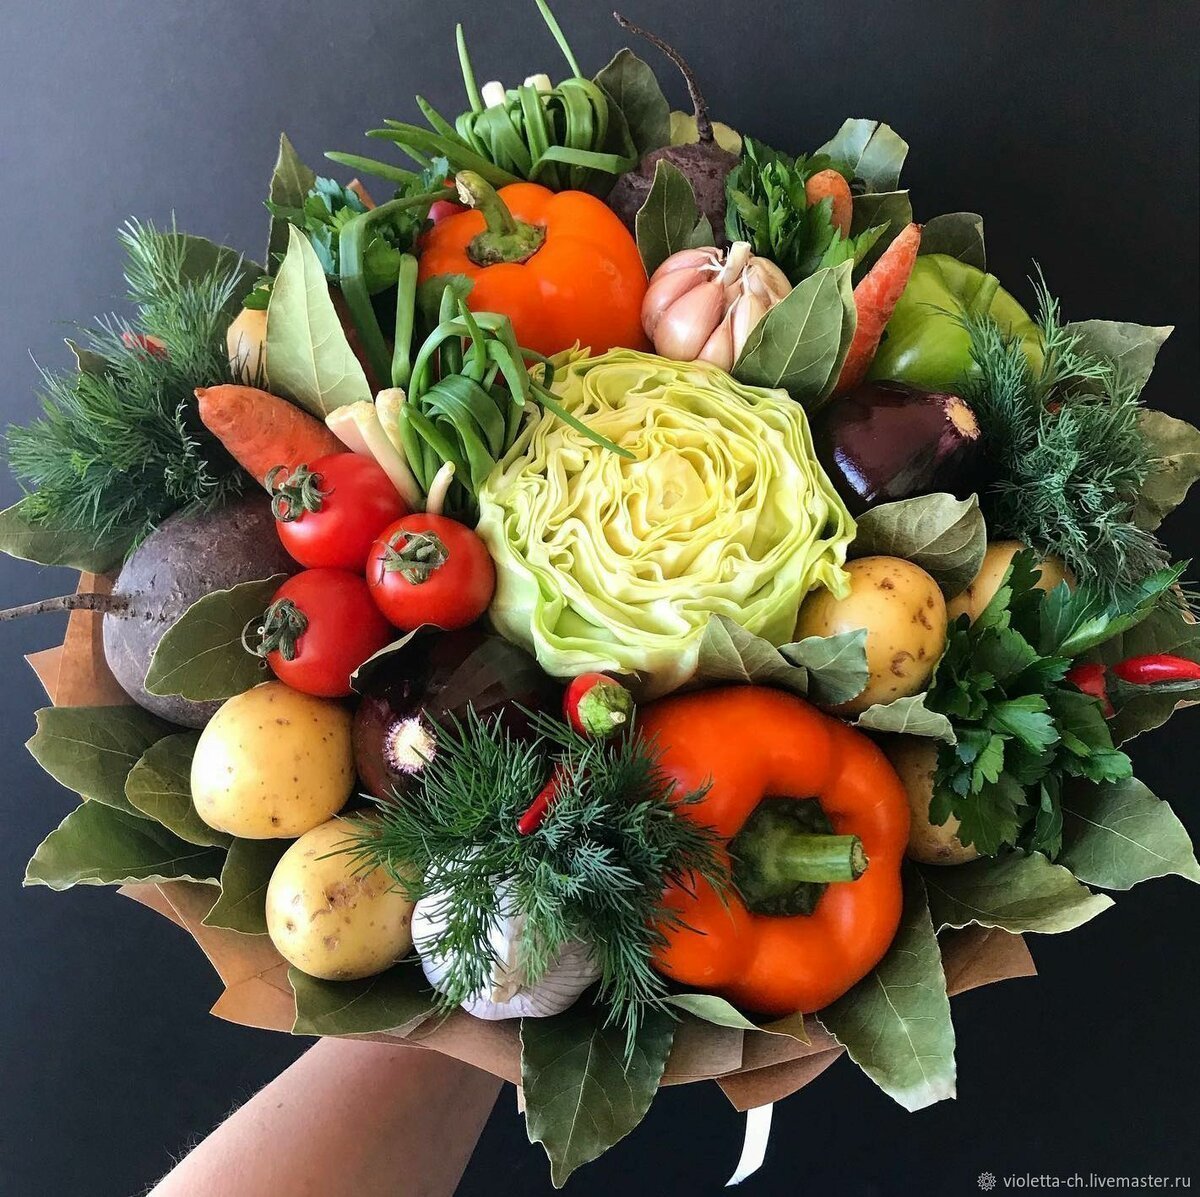 Осенние композиции из овощей и фруктов — фото в провинциальном стиле кантри